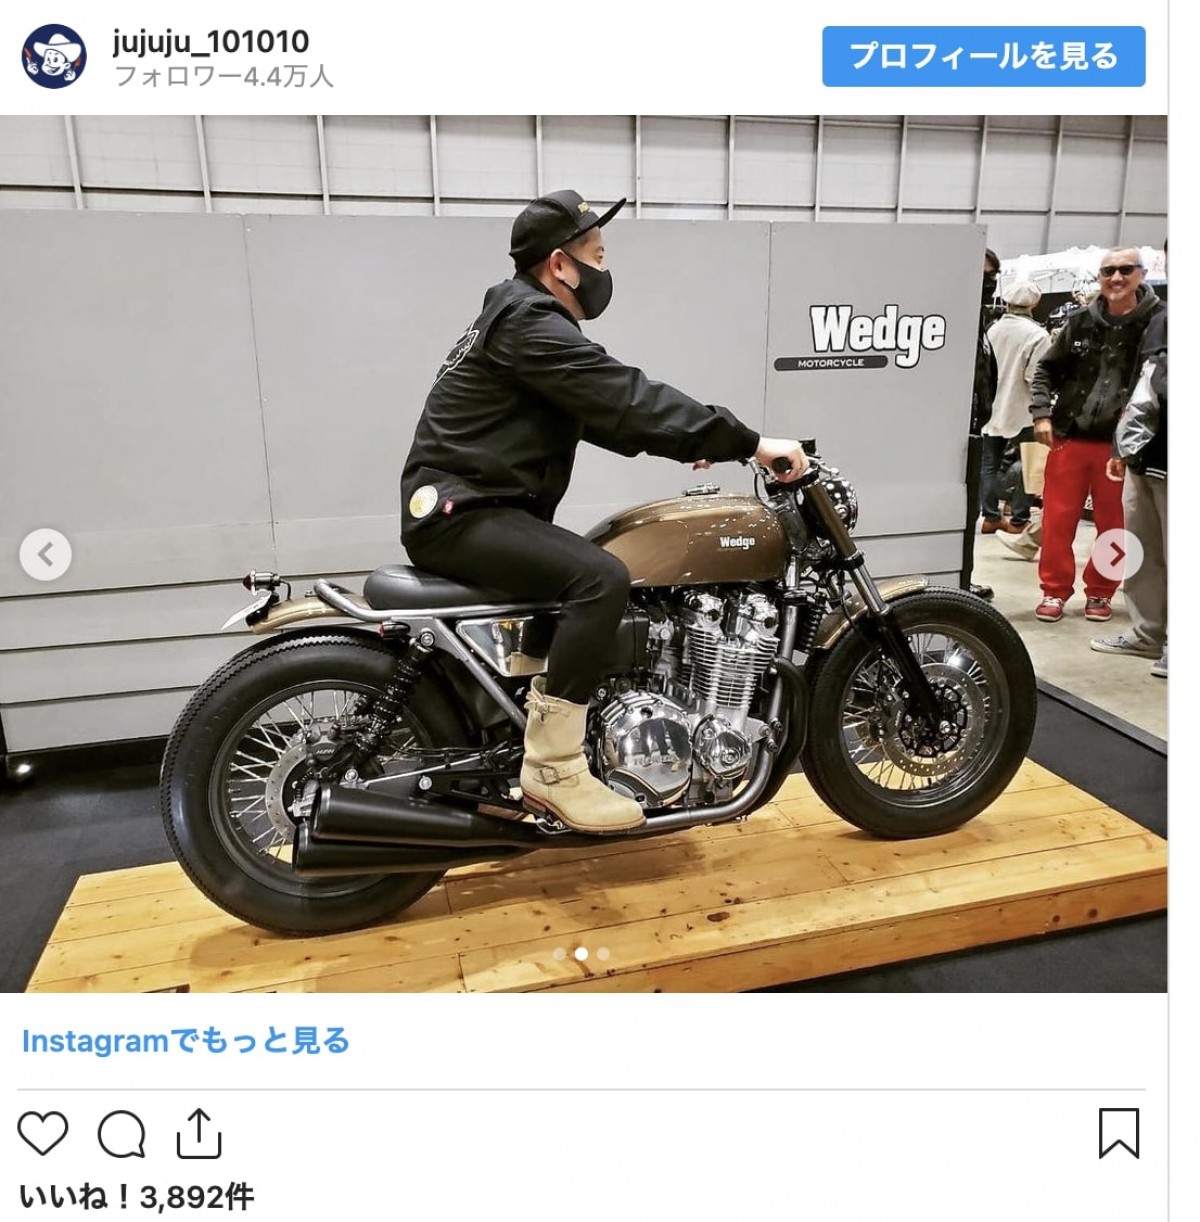 ヒロミ、スピードワゴン井戸田の総額500万円超バイクに痛烈ダメ出し「振り切ってないよね」